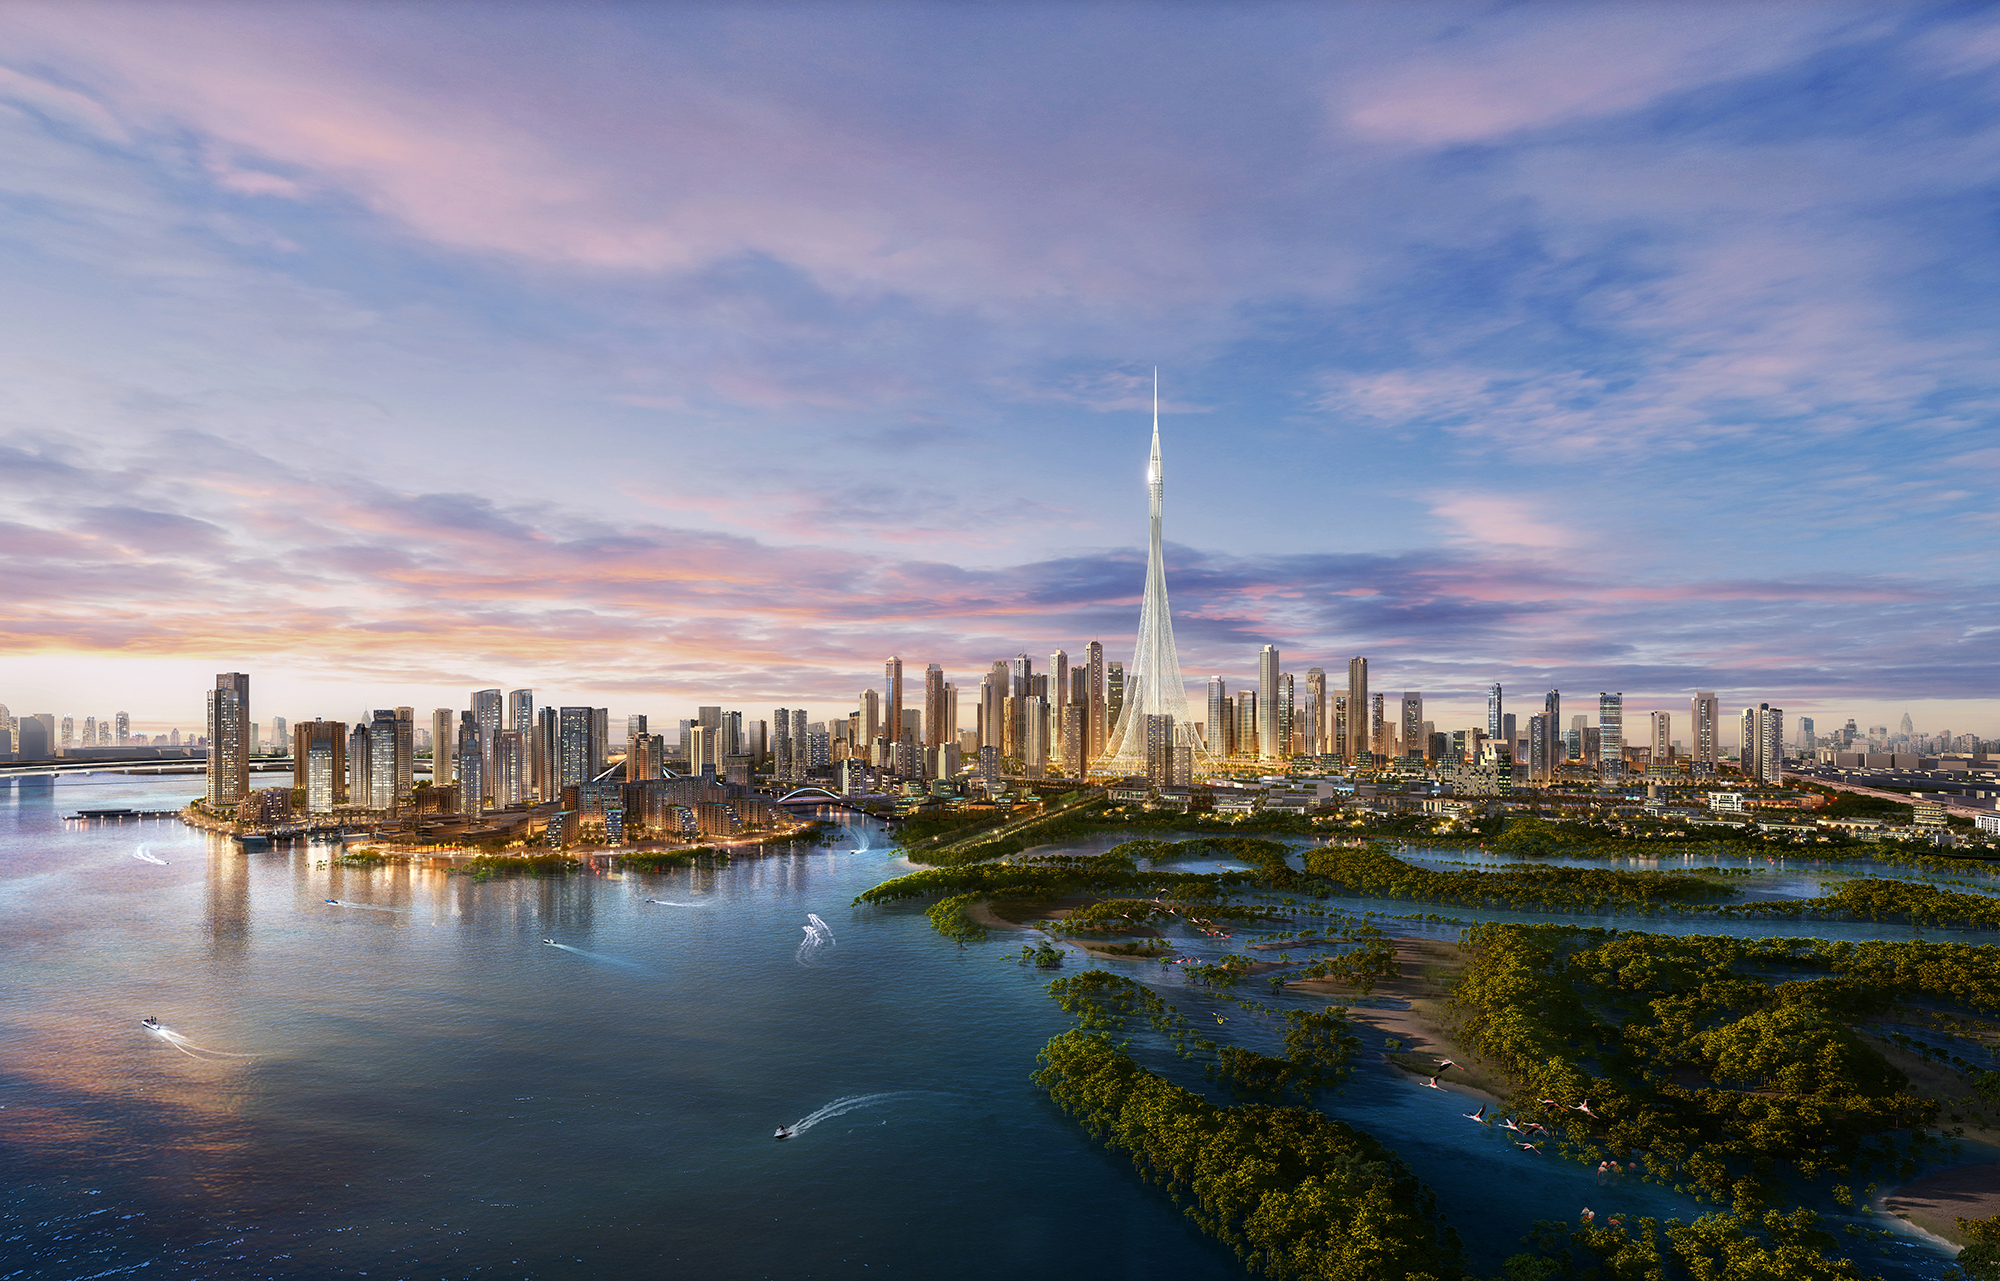 Dubai Square 2 Billion Record Breaking Mega Mall Announced